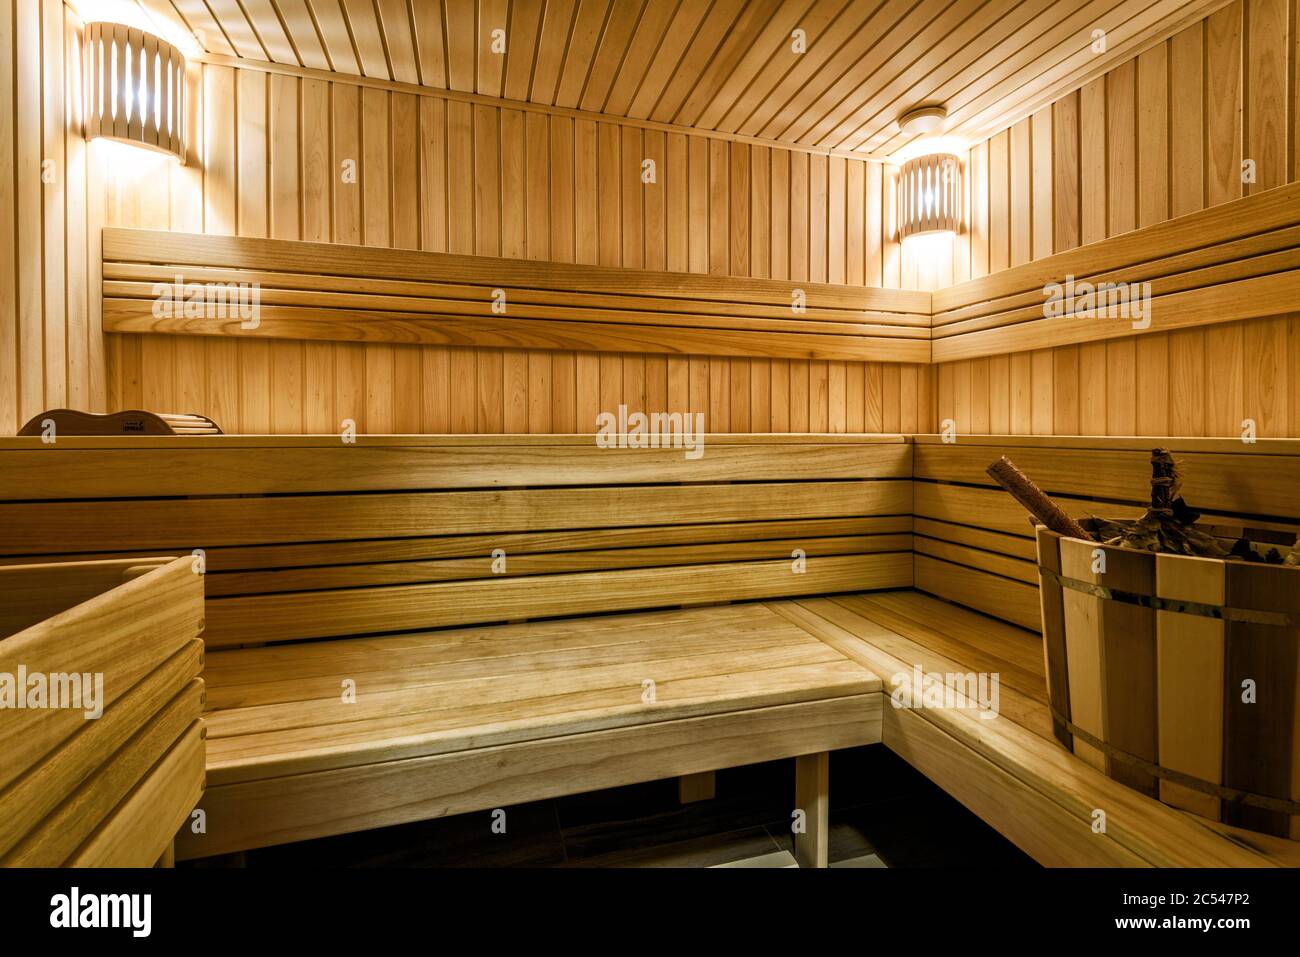 Klassische Sauna Interieur in Russland. Schöne und saubere Holzsauna. Modernes, schönes Bad für heiße Spa-Behandlungen. Gemütliche finnische Sauna im Hotel oder residieren Stockfoto